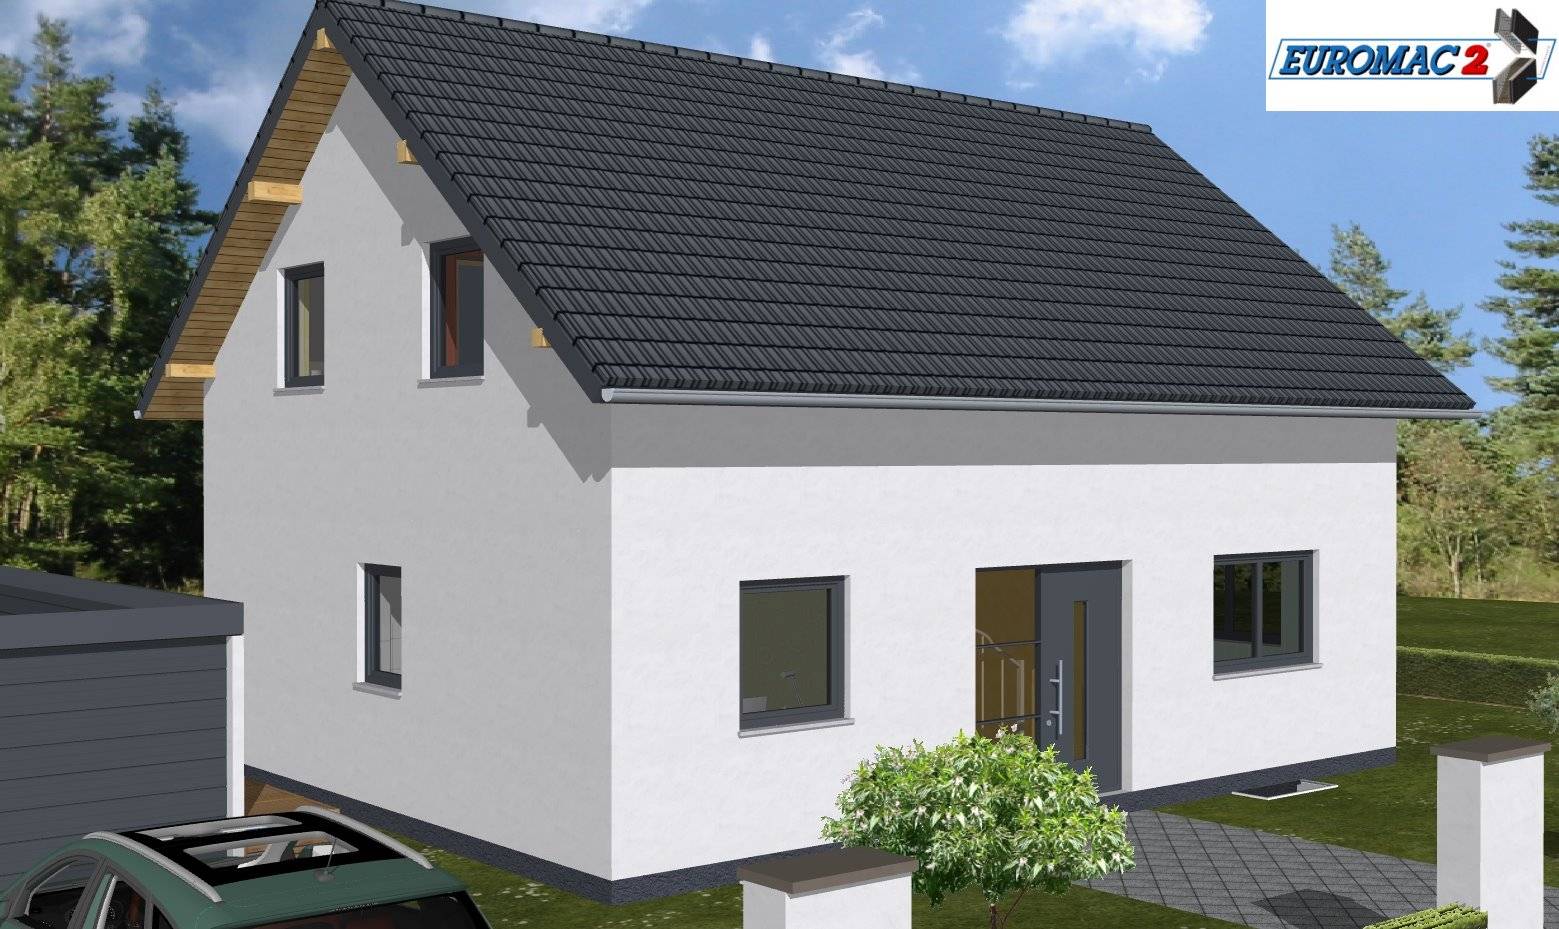 Massivhaus Family 135 WG von EUROMAC 2 S.A.S. Bausatzhaus ab 35454€, Satteldach-Klassiker Außenansicht 1